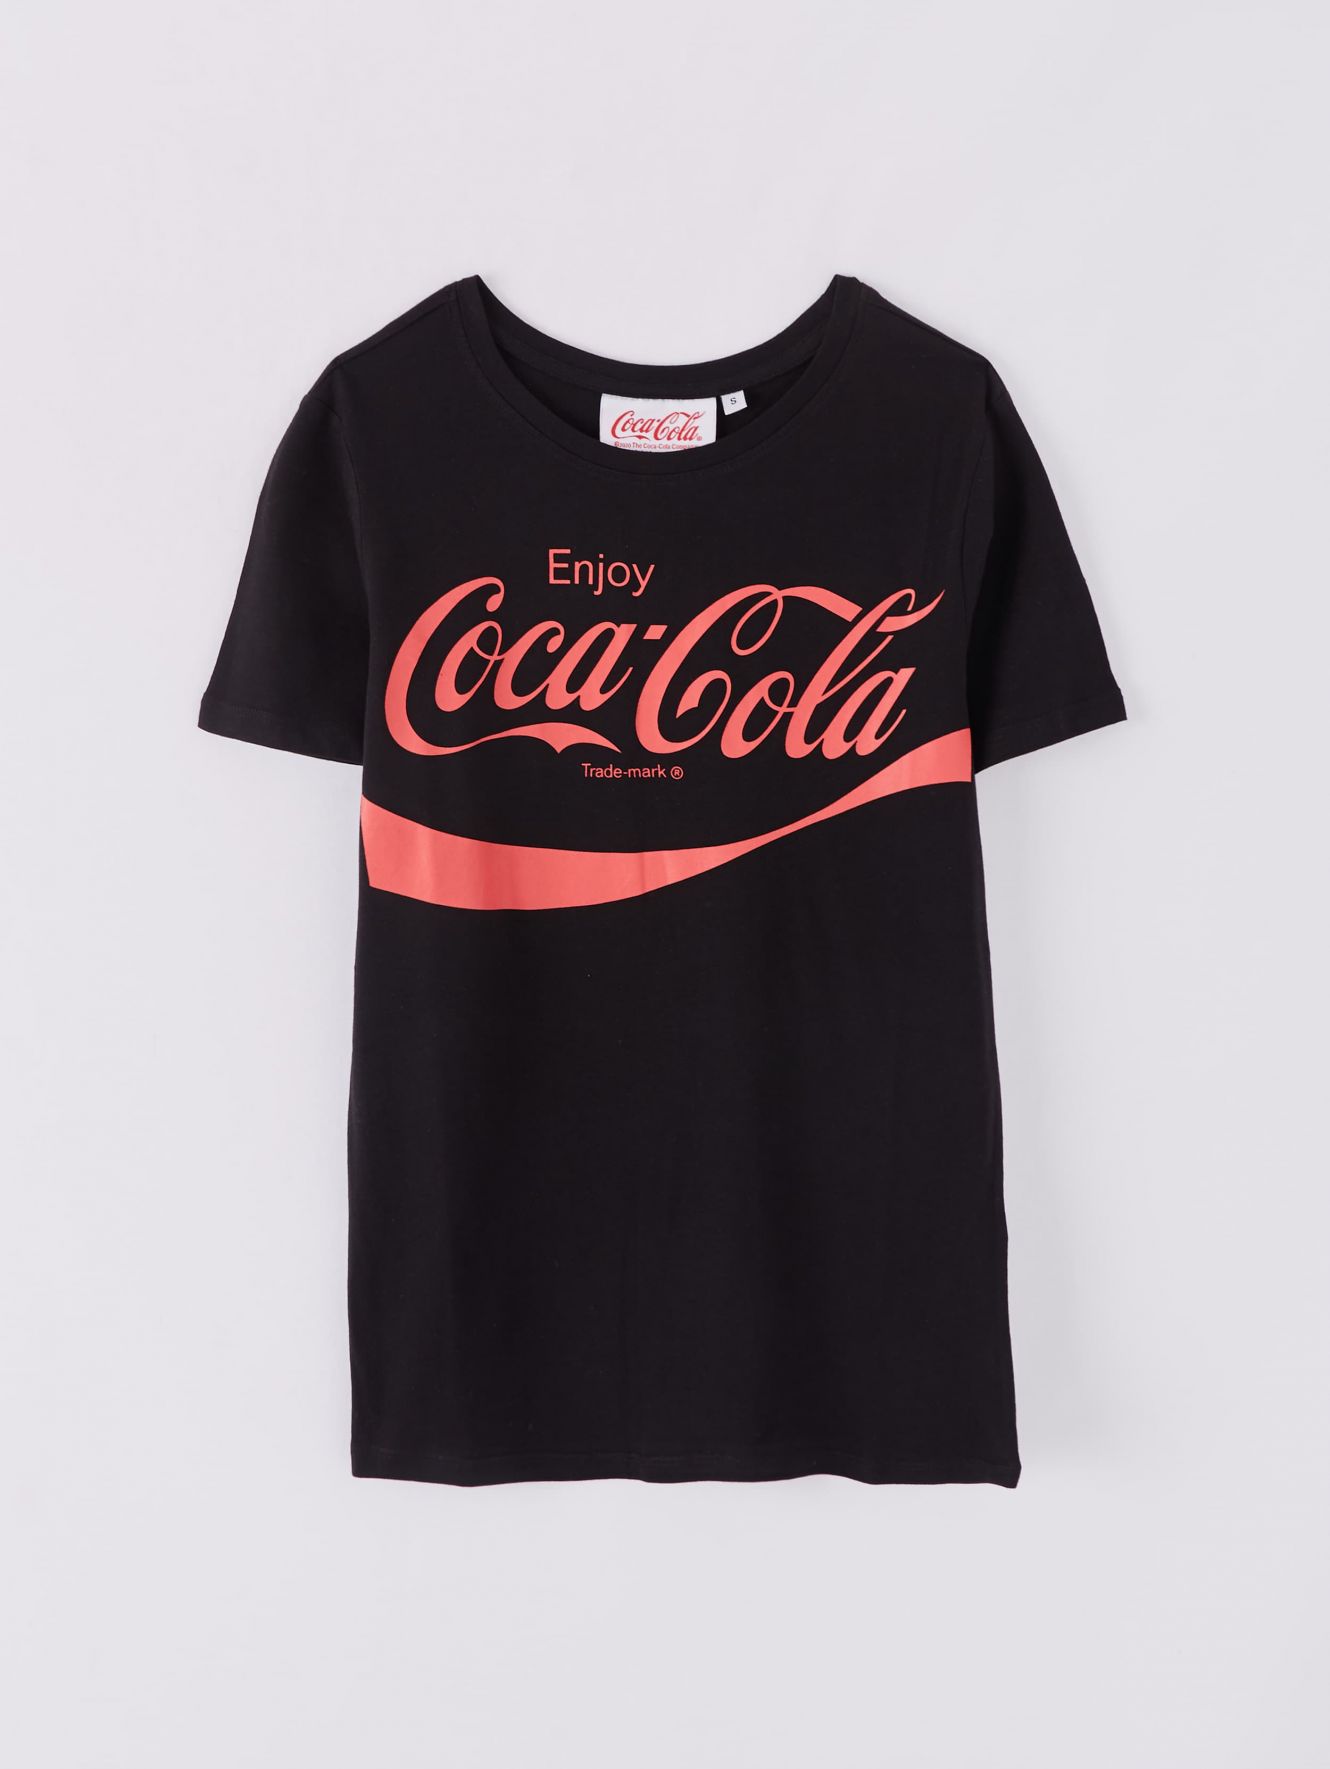 coca cola t shirt online